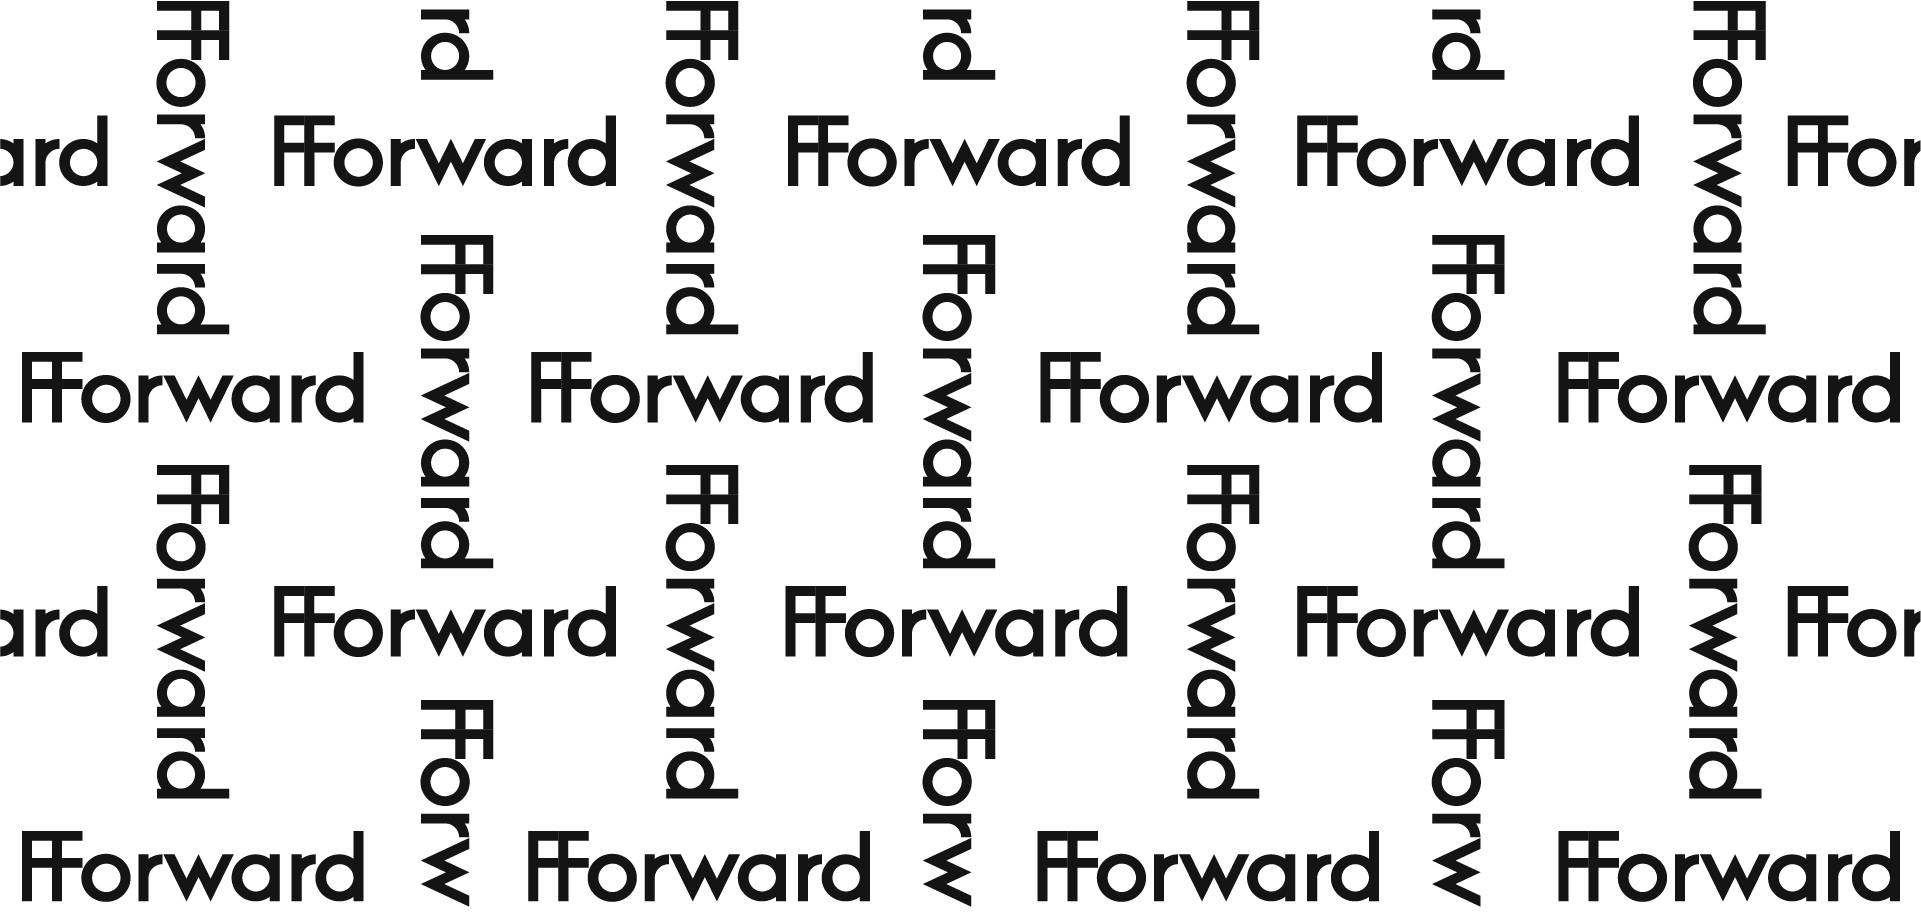 FForward